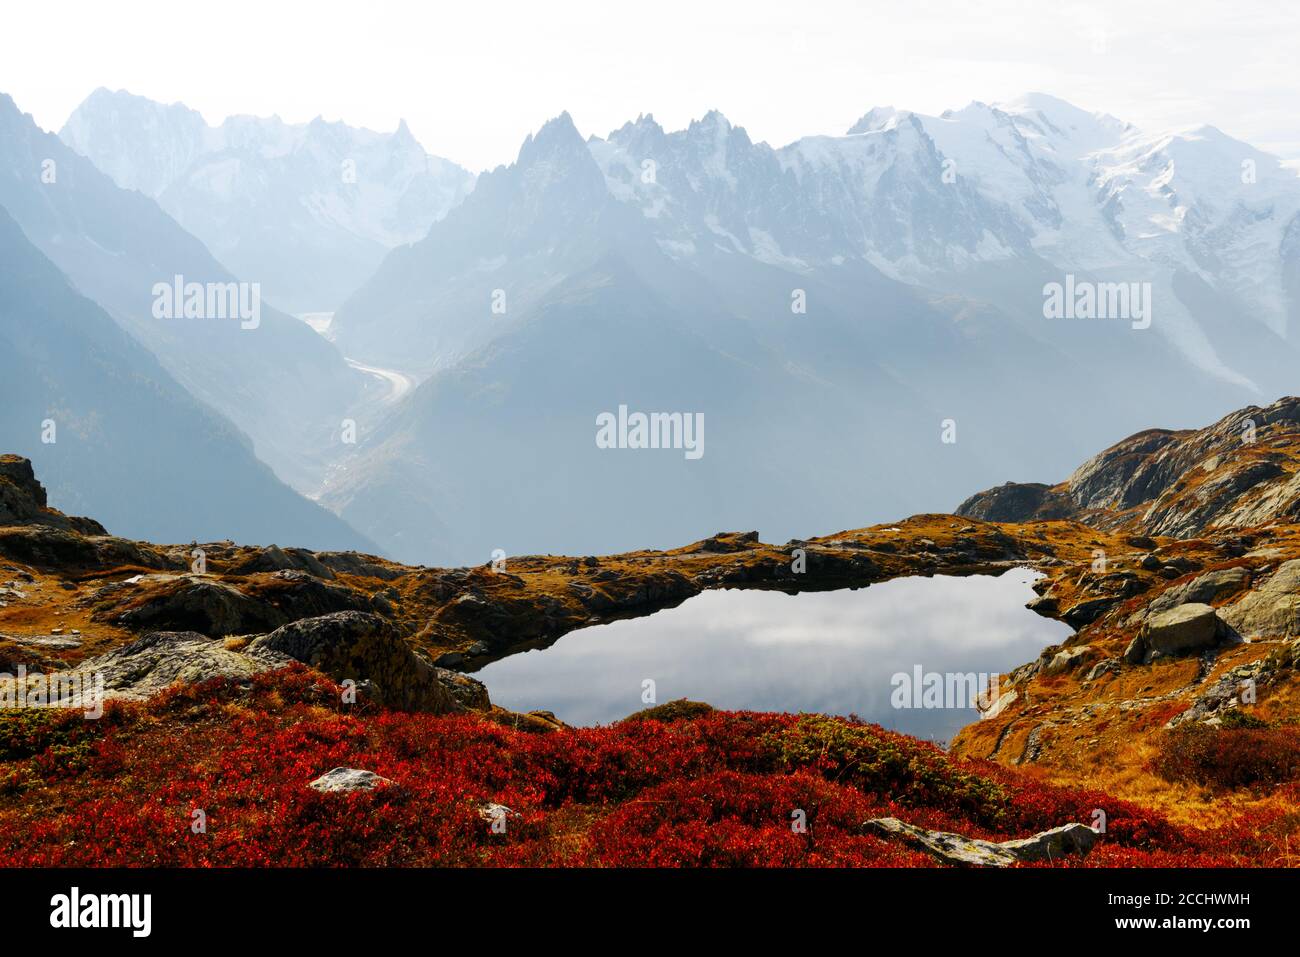 Tramonto colorato sul lago Chesery (Lac De Cheserys) nelle Alpi francesi. La catena montuosa del Monte Bianco sullo sfondo. Chamonix, Alpi Graiche. Fotografia di paesaggio Foto Stock